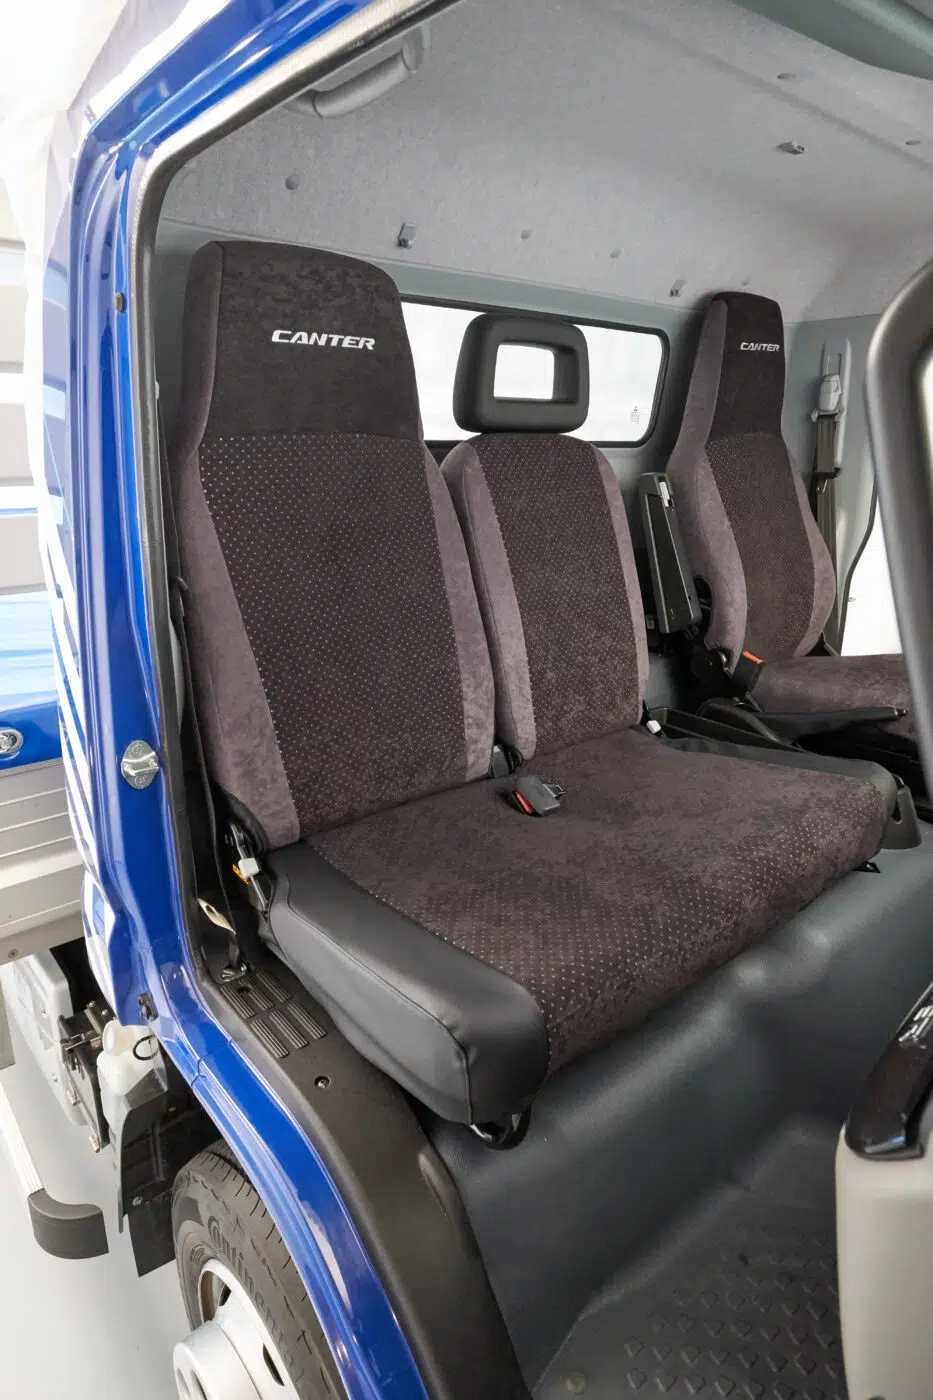 Potah sedadla FUSO poskytuje dokonalou ochranu interiéru před opotřebením a znečištěním. Prodlužuje životnost sedadel a svým kvalitním vzhledem přispívá k zachování hodnoty vašeho vozu Canter. S potahem sedadla FUSO „ALCANTA“ dodáte interiéru stylový nádech. Kromě toho všechny potahy sedadel nabízejí maximální pohodlí, aniž by to bylo na úkor funkčnosti, jako je například integrovaný stolek dvojitého sedadla spolujezdce.